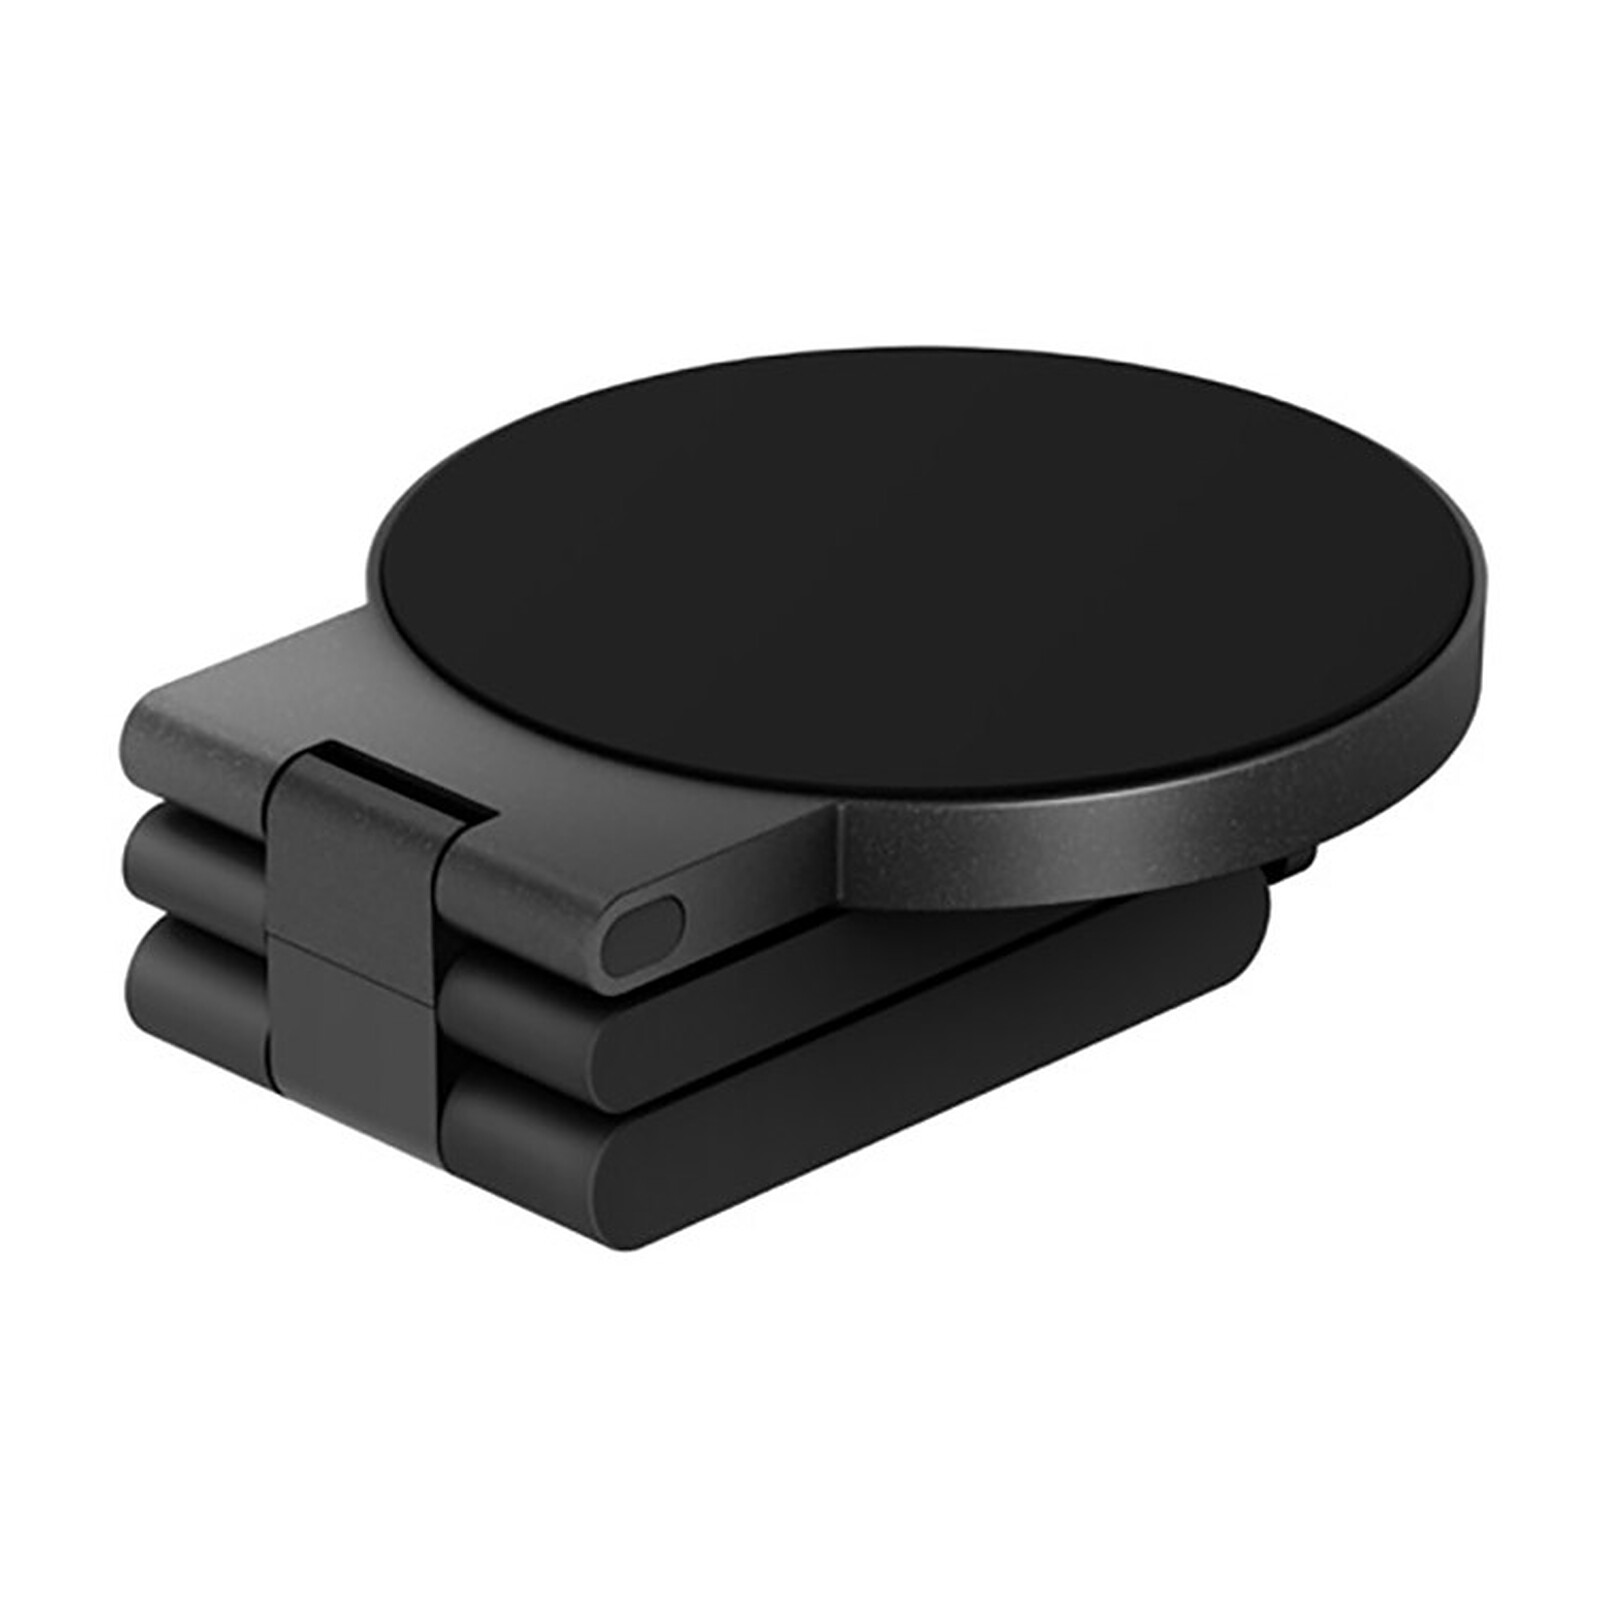 Soporte magnético para iPhone Negro de Belkin